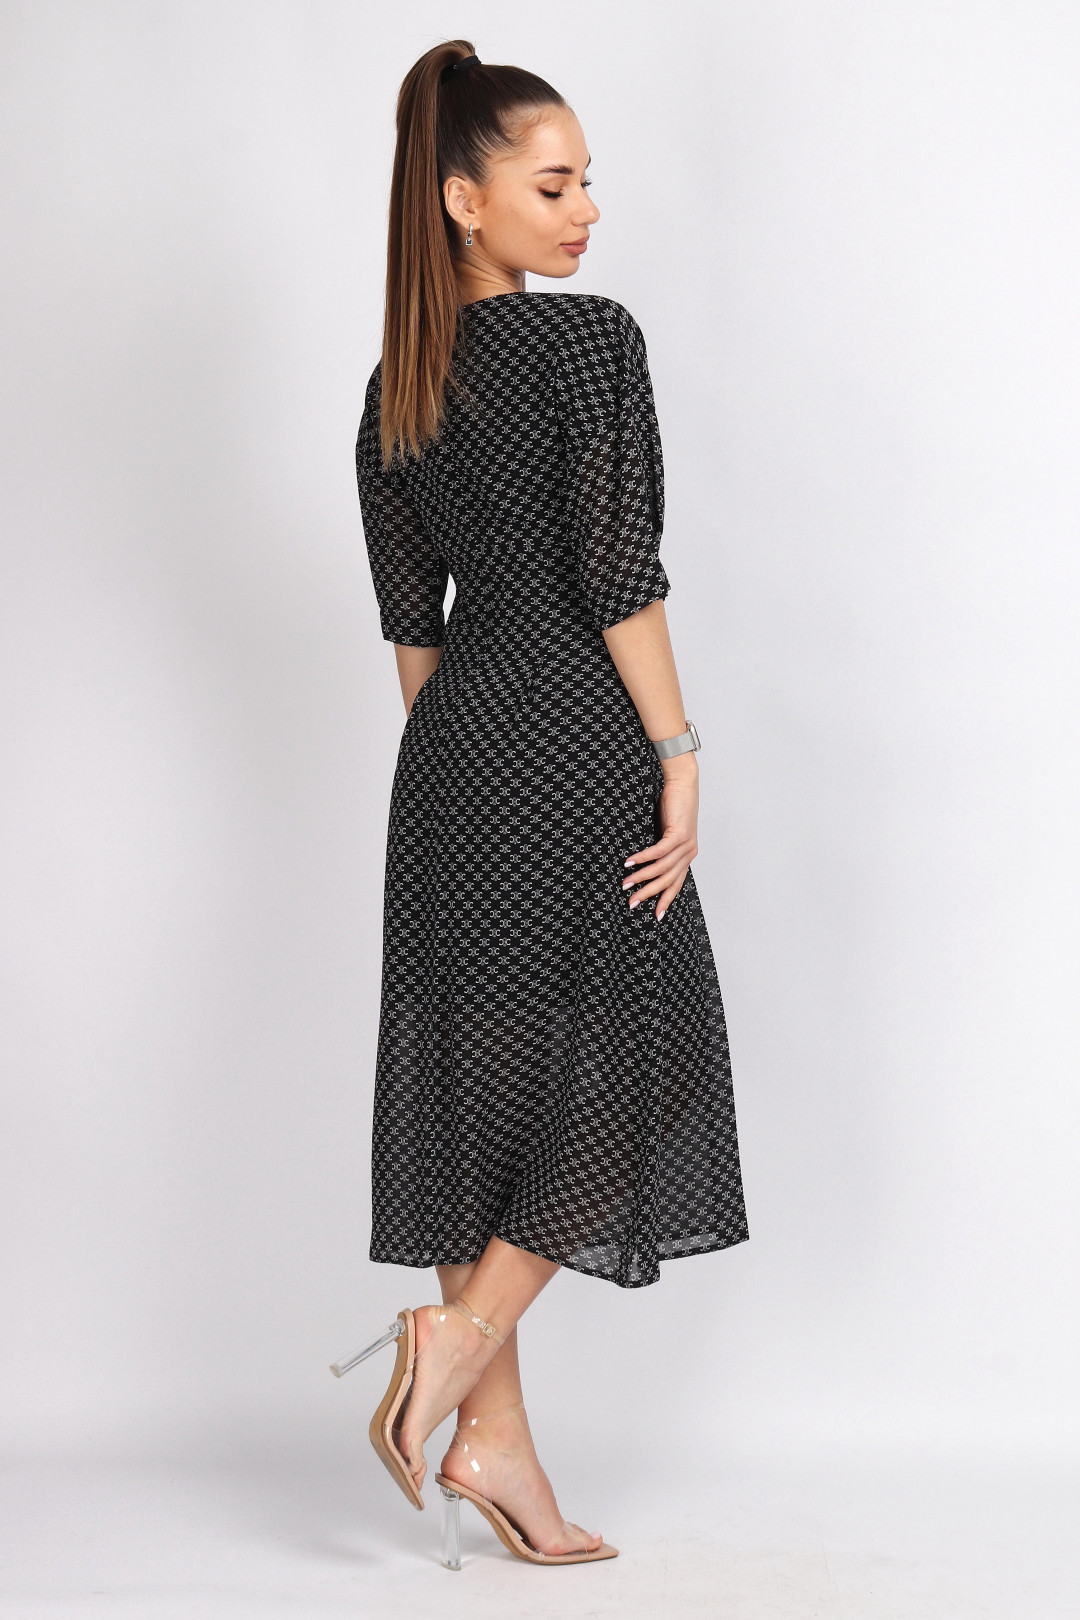 Платье МиА-Мода 1342-6 черно-белый принт